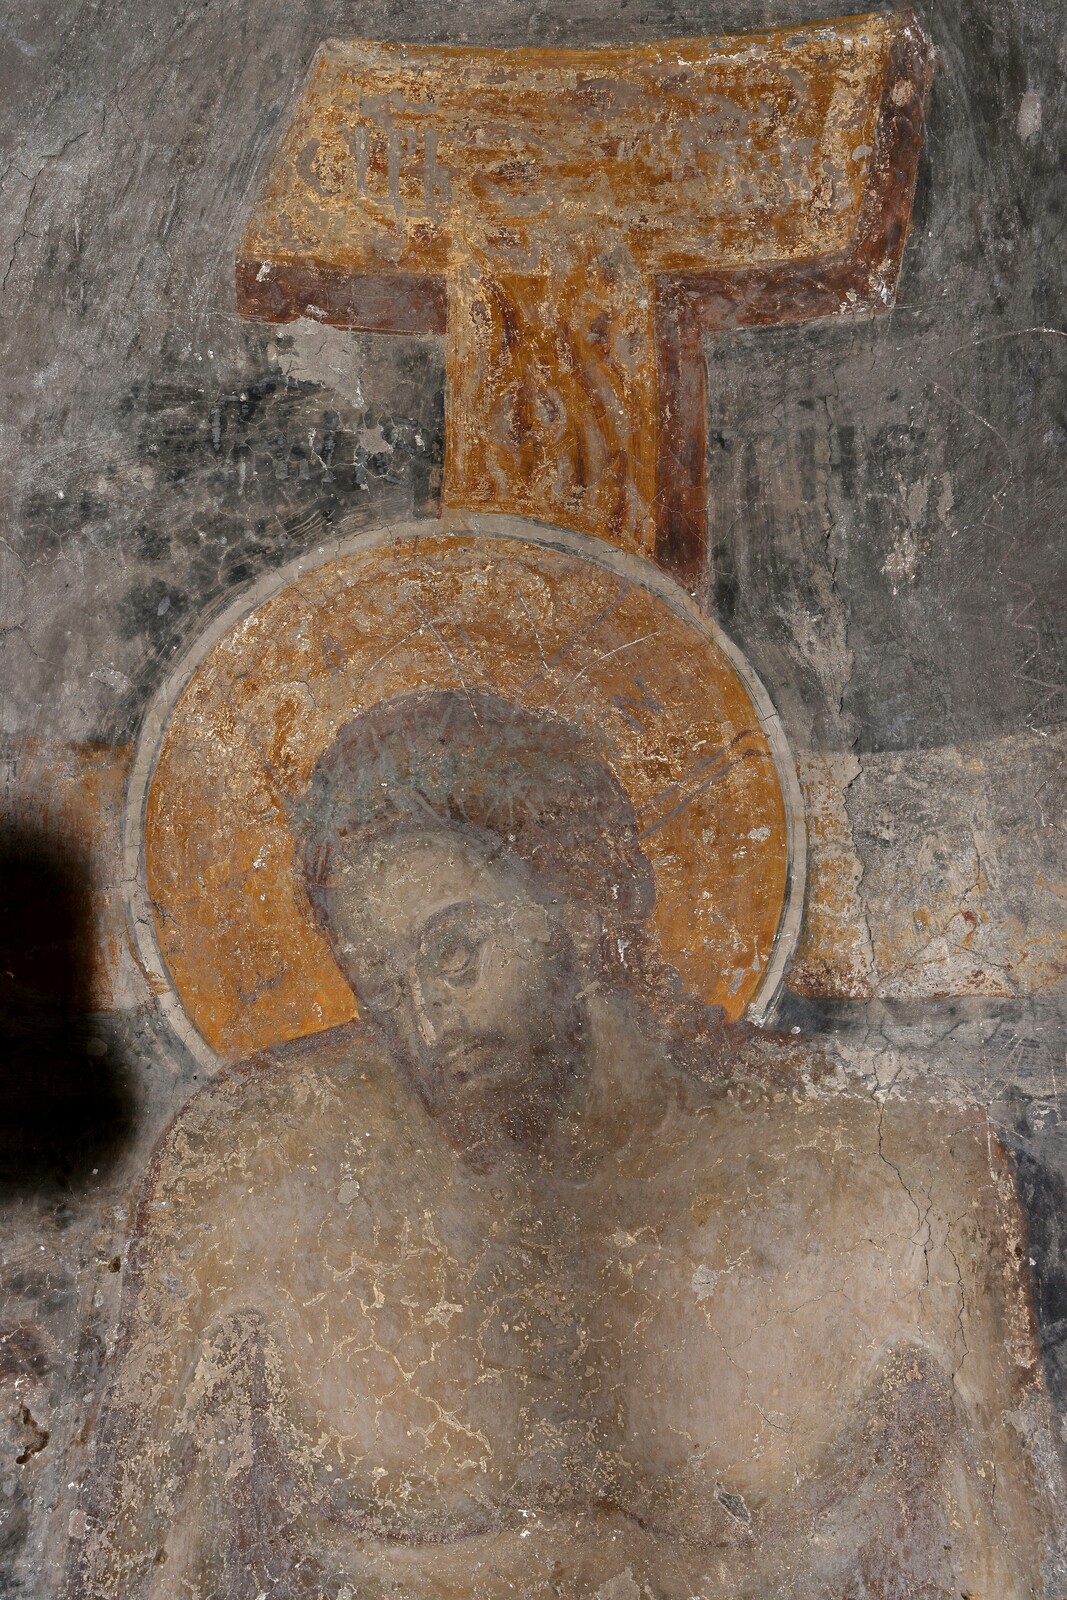 Christ, Pieta, detail